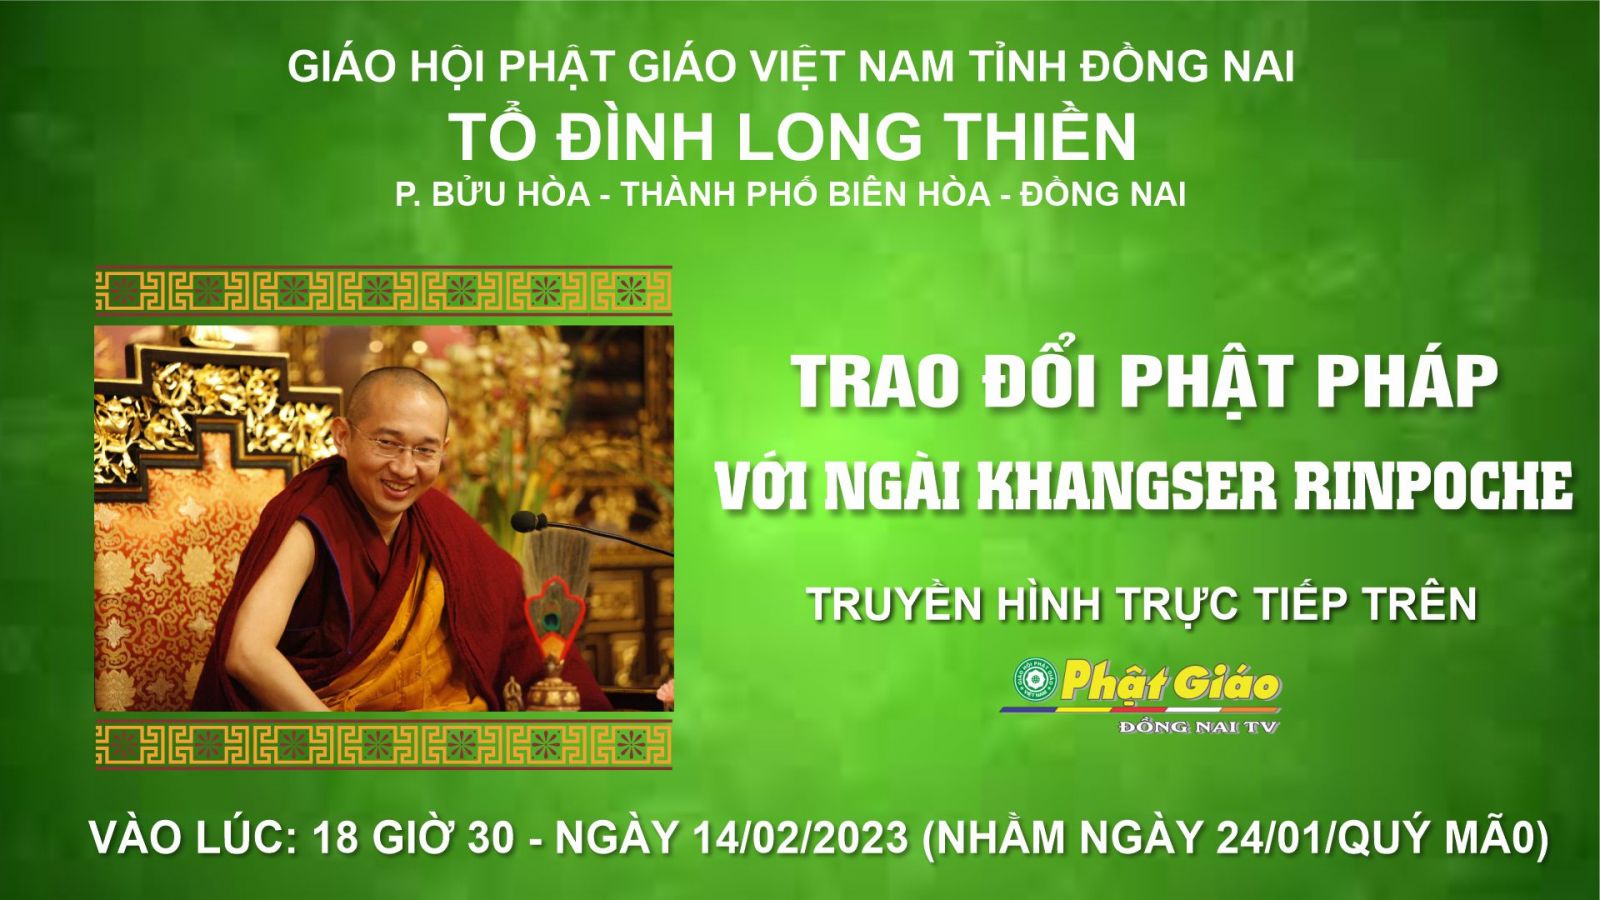 [Trực tiếp] Lễ Thuyết Giảng và Chúc Phúc của Ngài Khangser Rinpoche tại Tổ đình Long Thiền - Biên Hòa - Đồng Nai.